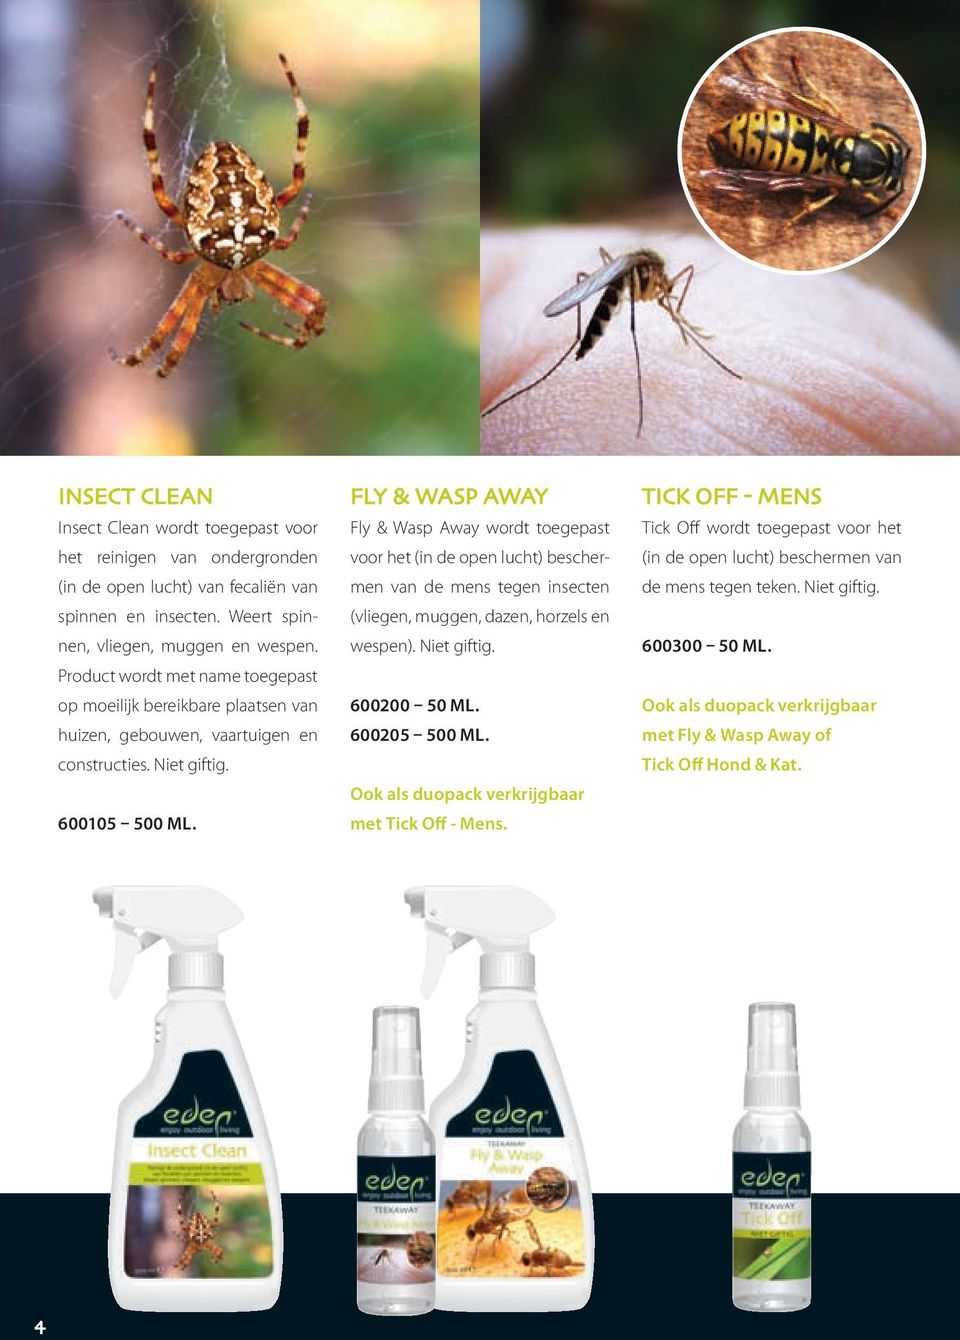 Fly & Wasp Away Fly & Wasp Away wordt toegepast voor het (in de open lucht) beschermen van de mens tegen insecten (vliegen, muggen, dazen, horzels en wespen). Niet giftig.